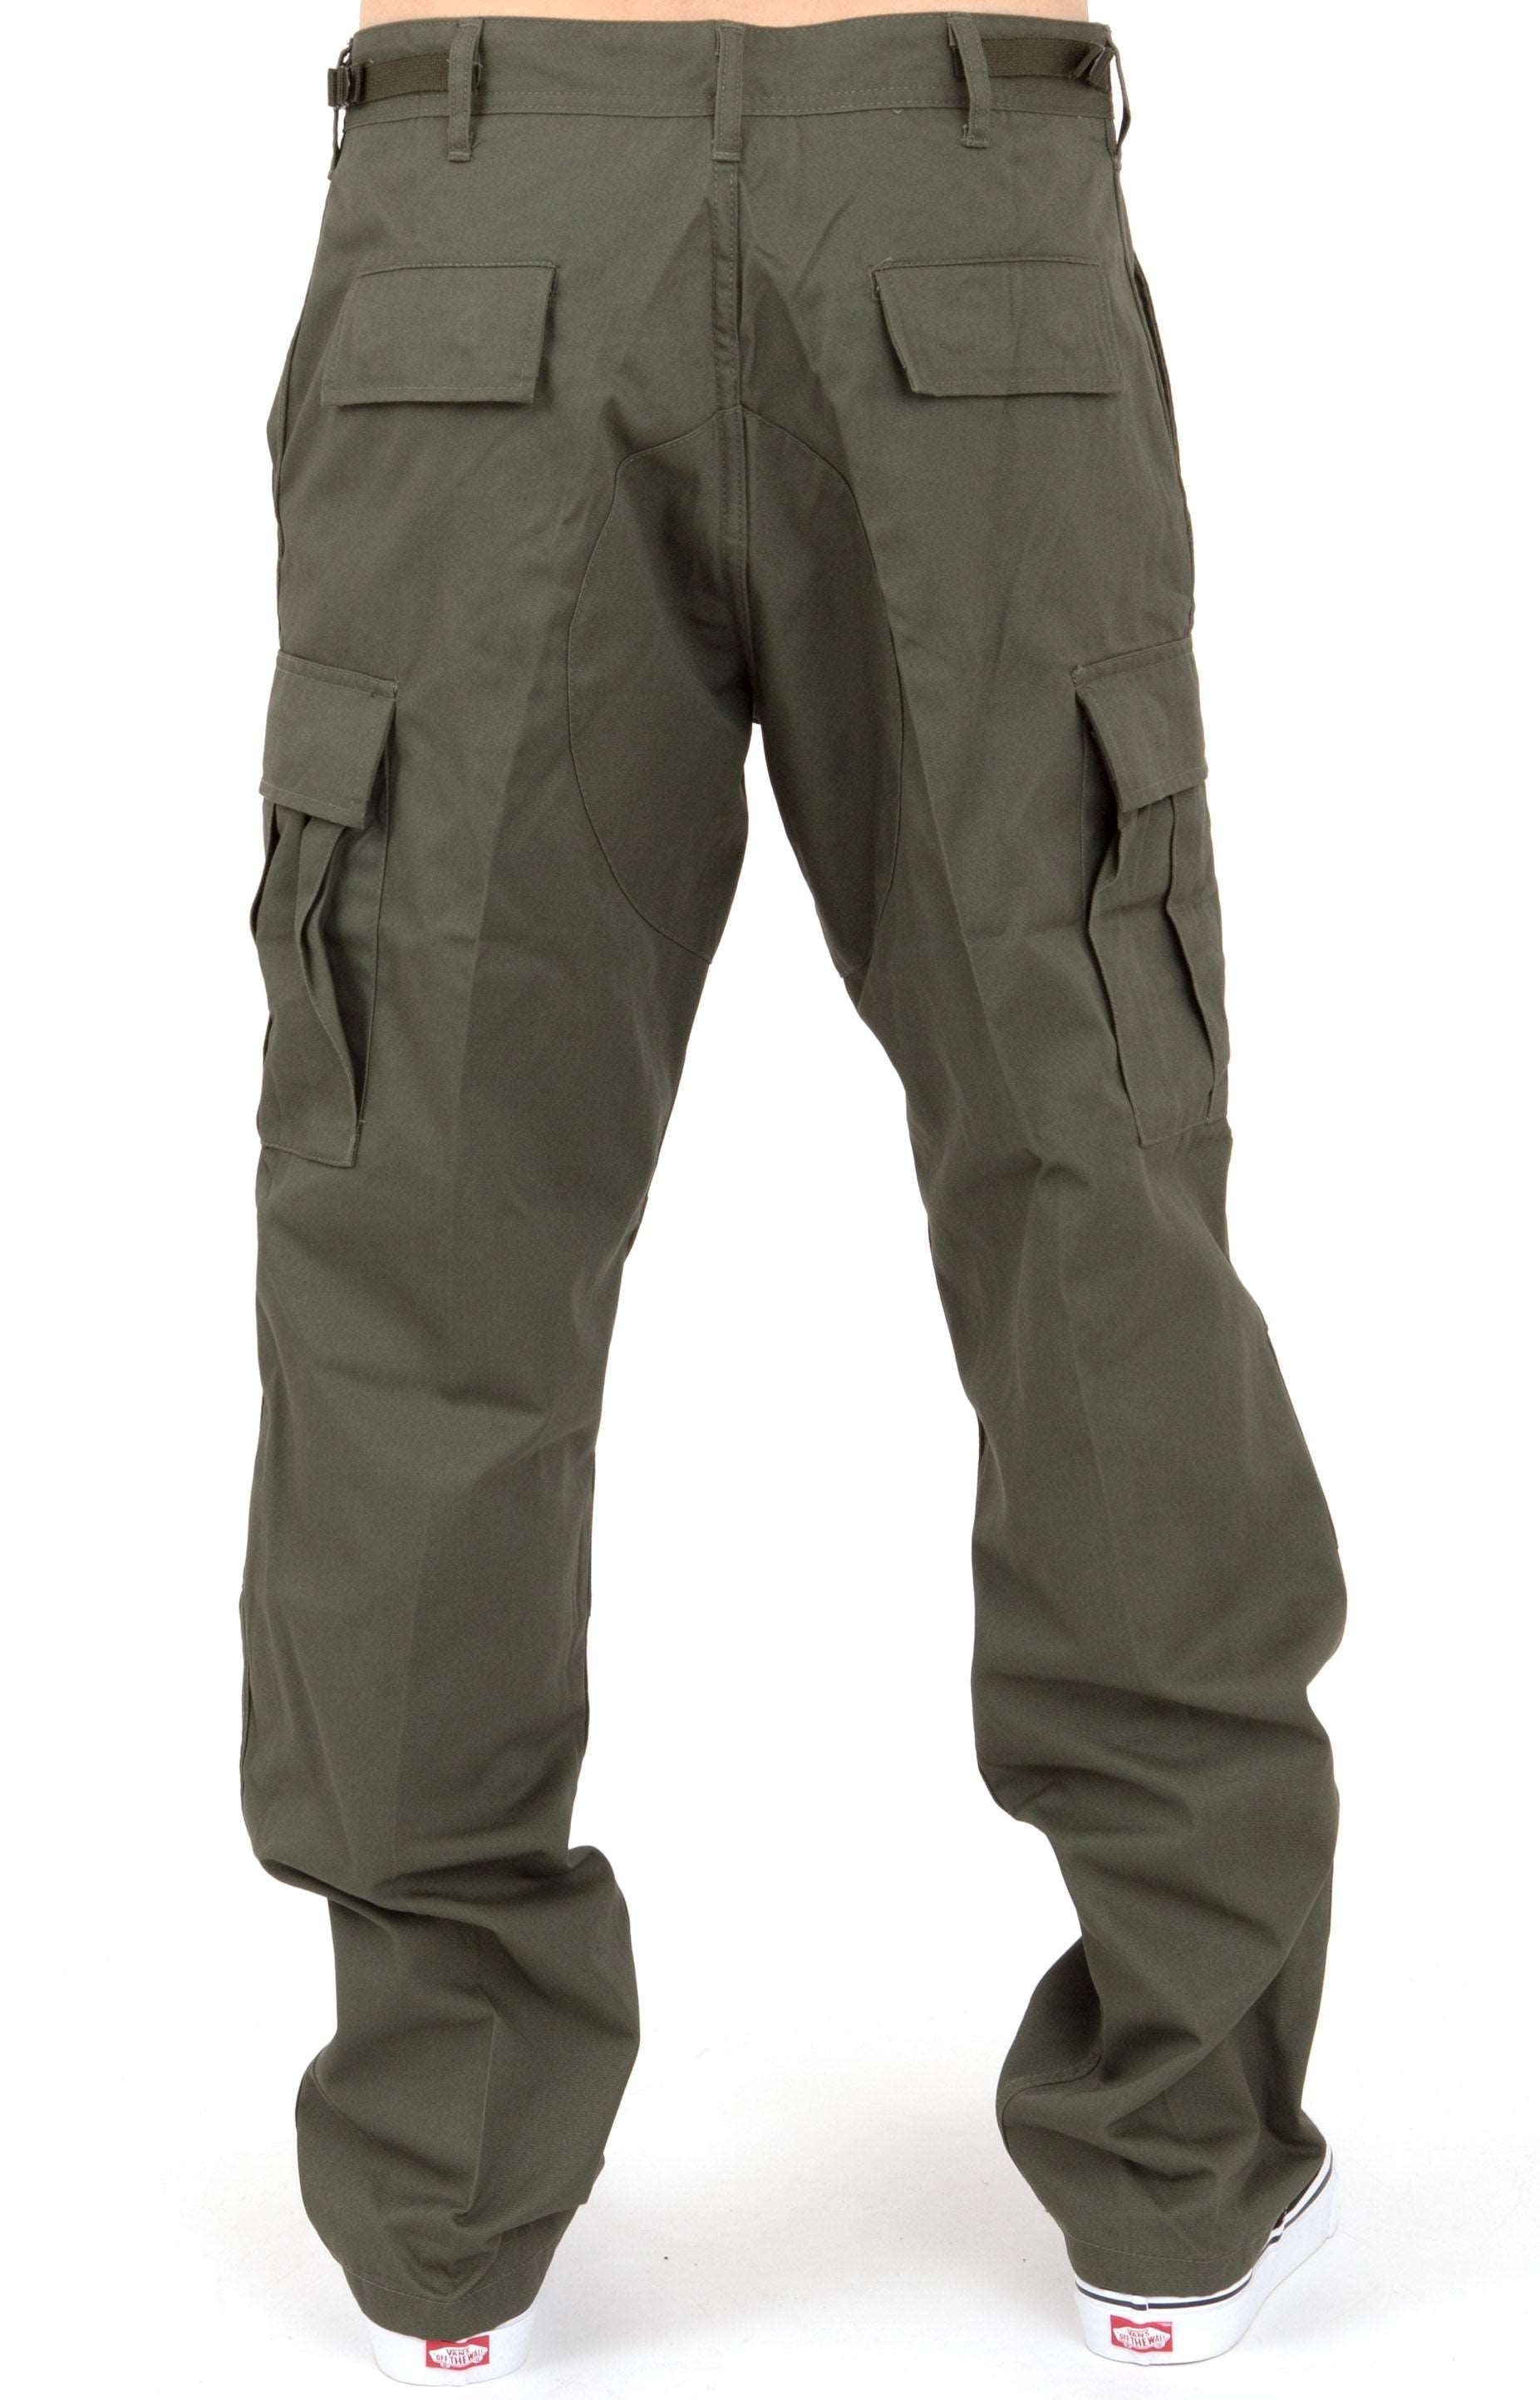 (7838) Rothco Tactical BDU Pants - Olive Drab